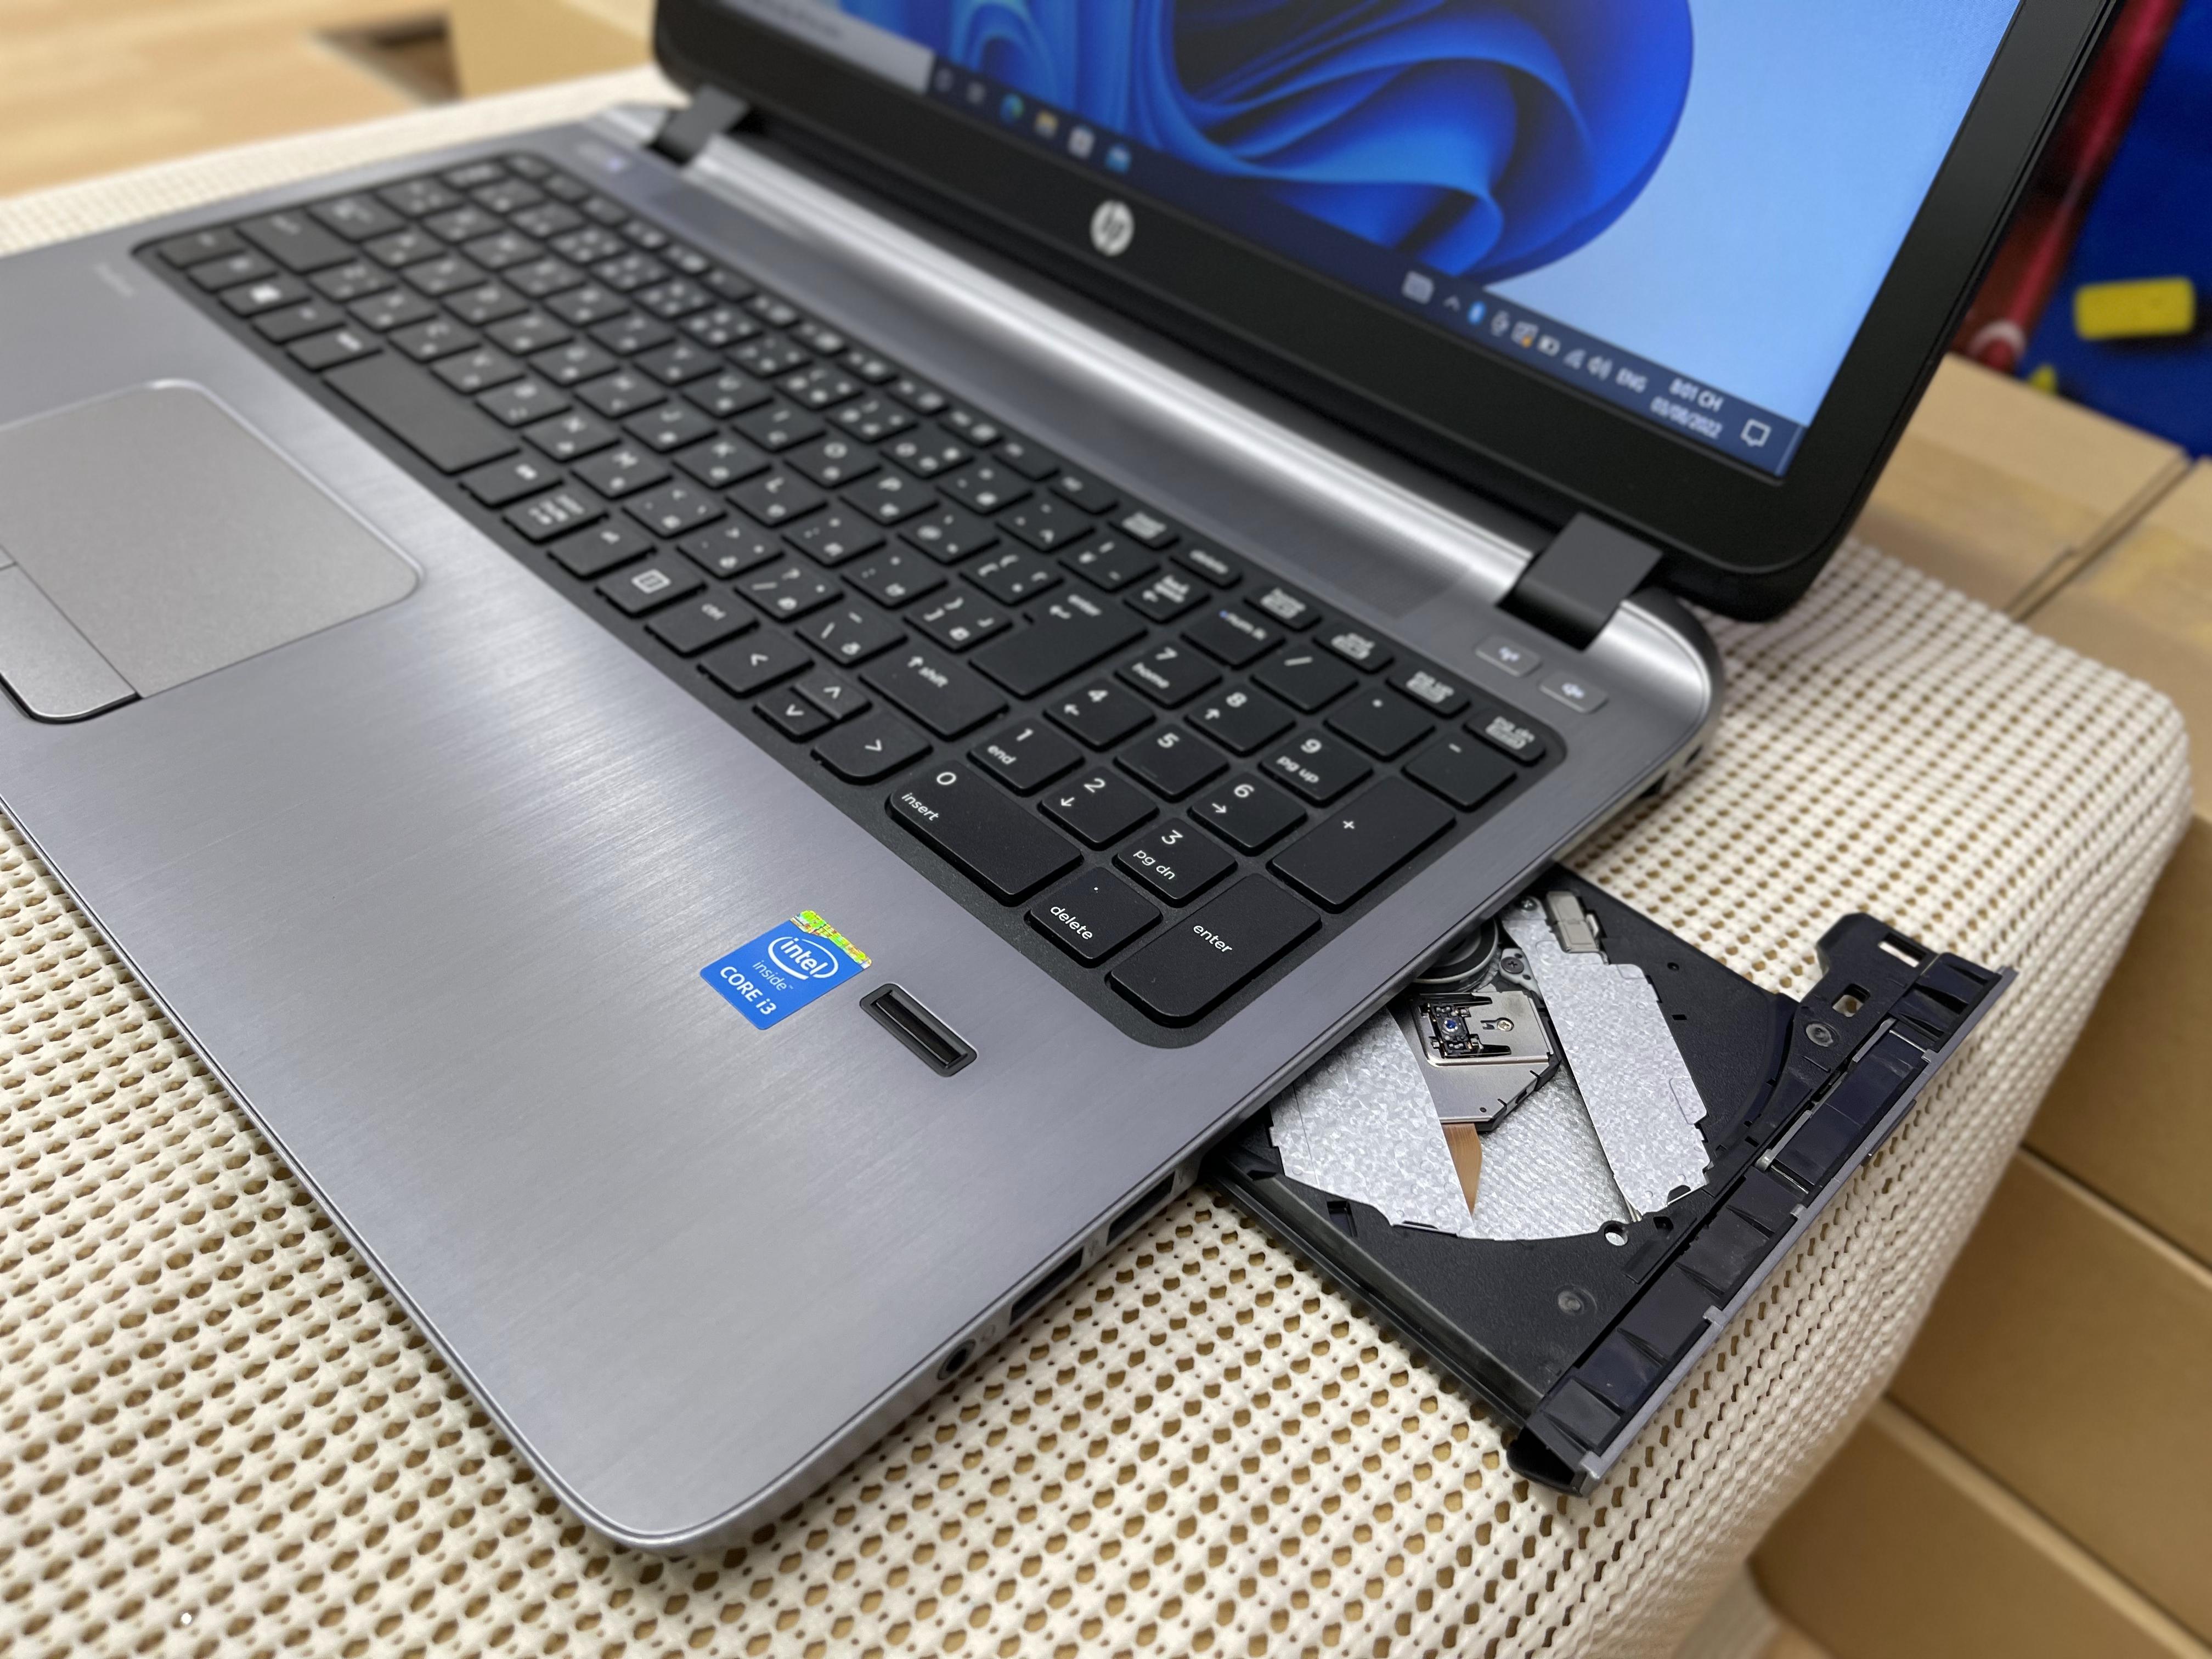 HP ProBook 450G2 Mode 2015 /15.6 inch Full Led / Khóa Vân Tay/ Gen5 / Core i3/ 5010U  / 2.10GHz  / Ram 4G / SSD 128G / Win 10 Pro tiếng việt  / MS: 20220803 6746